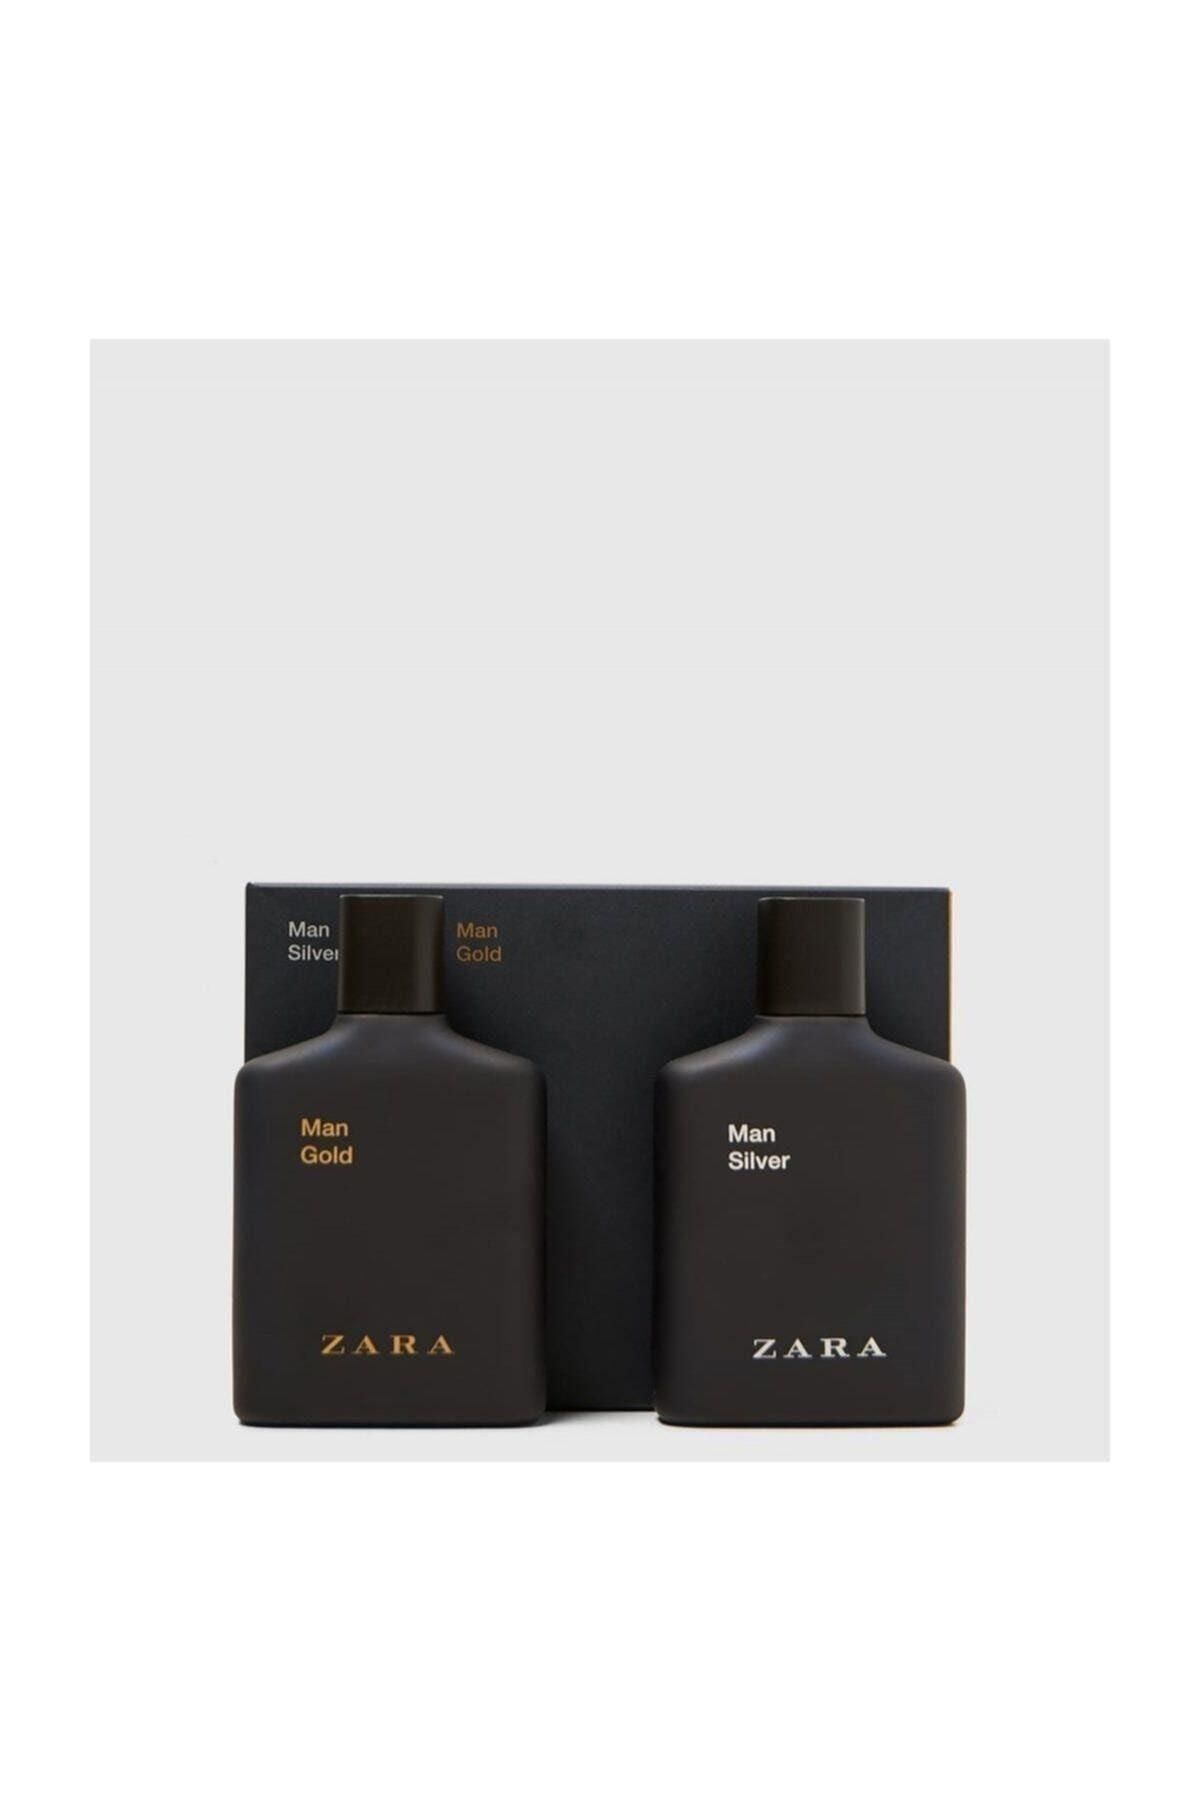 Zara Man Gold + Man Sılver Edt 100 Ml